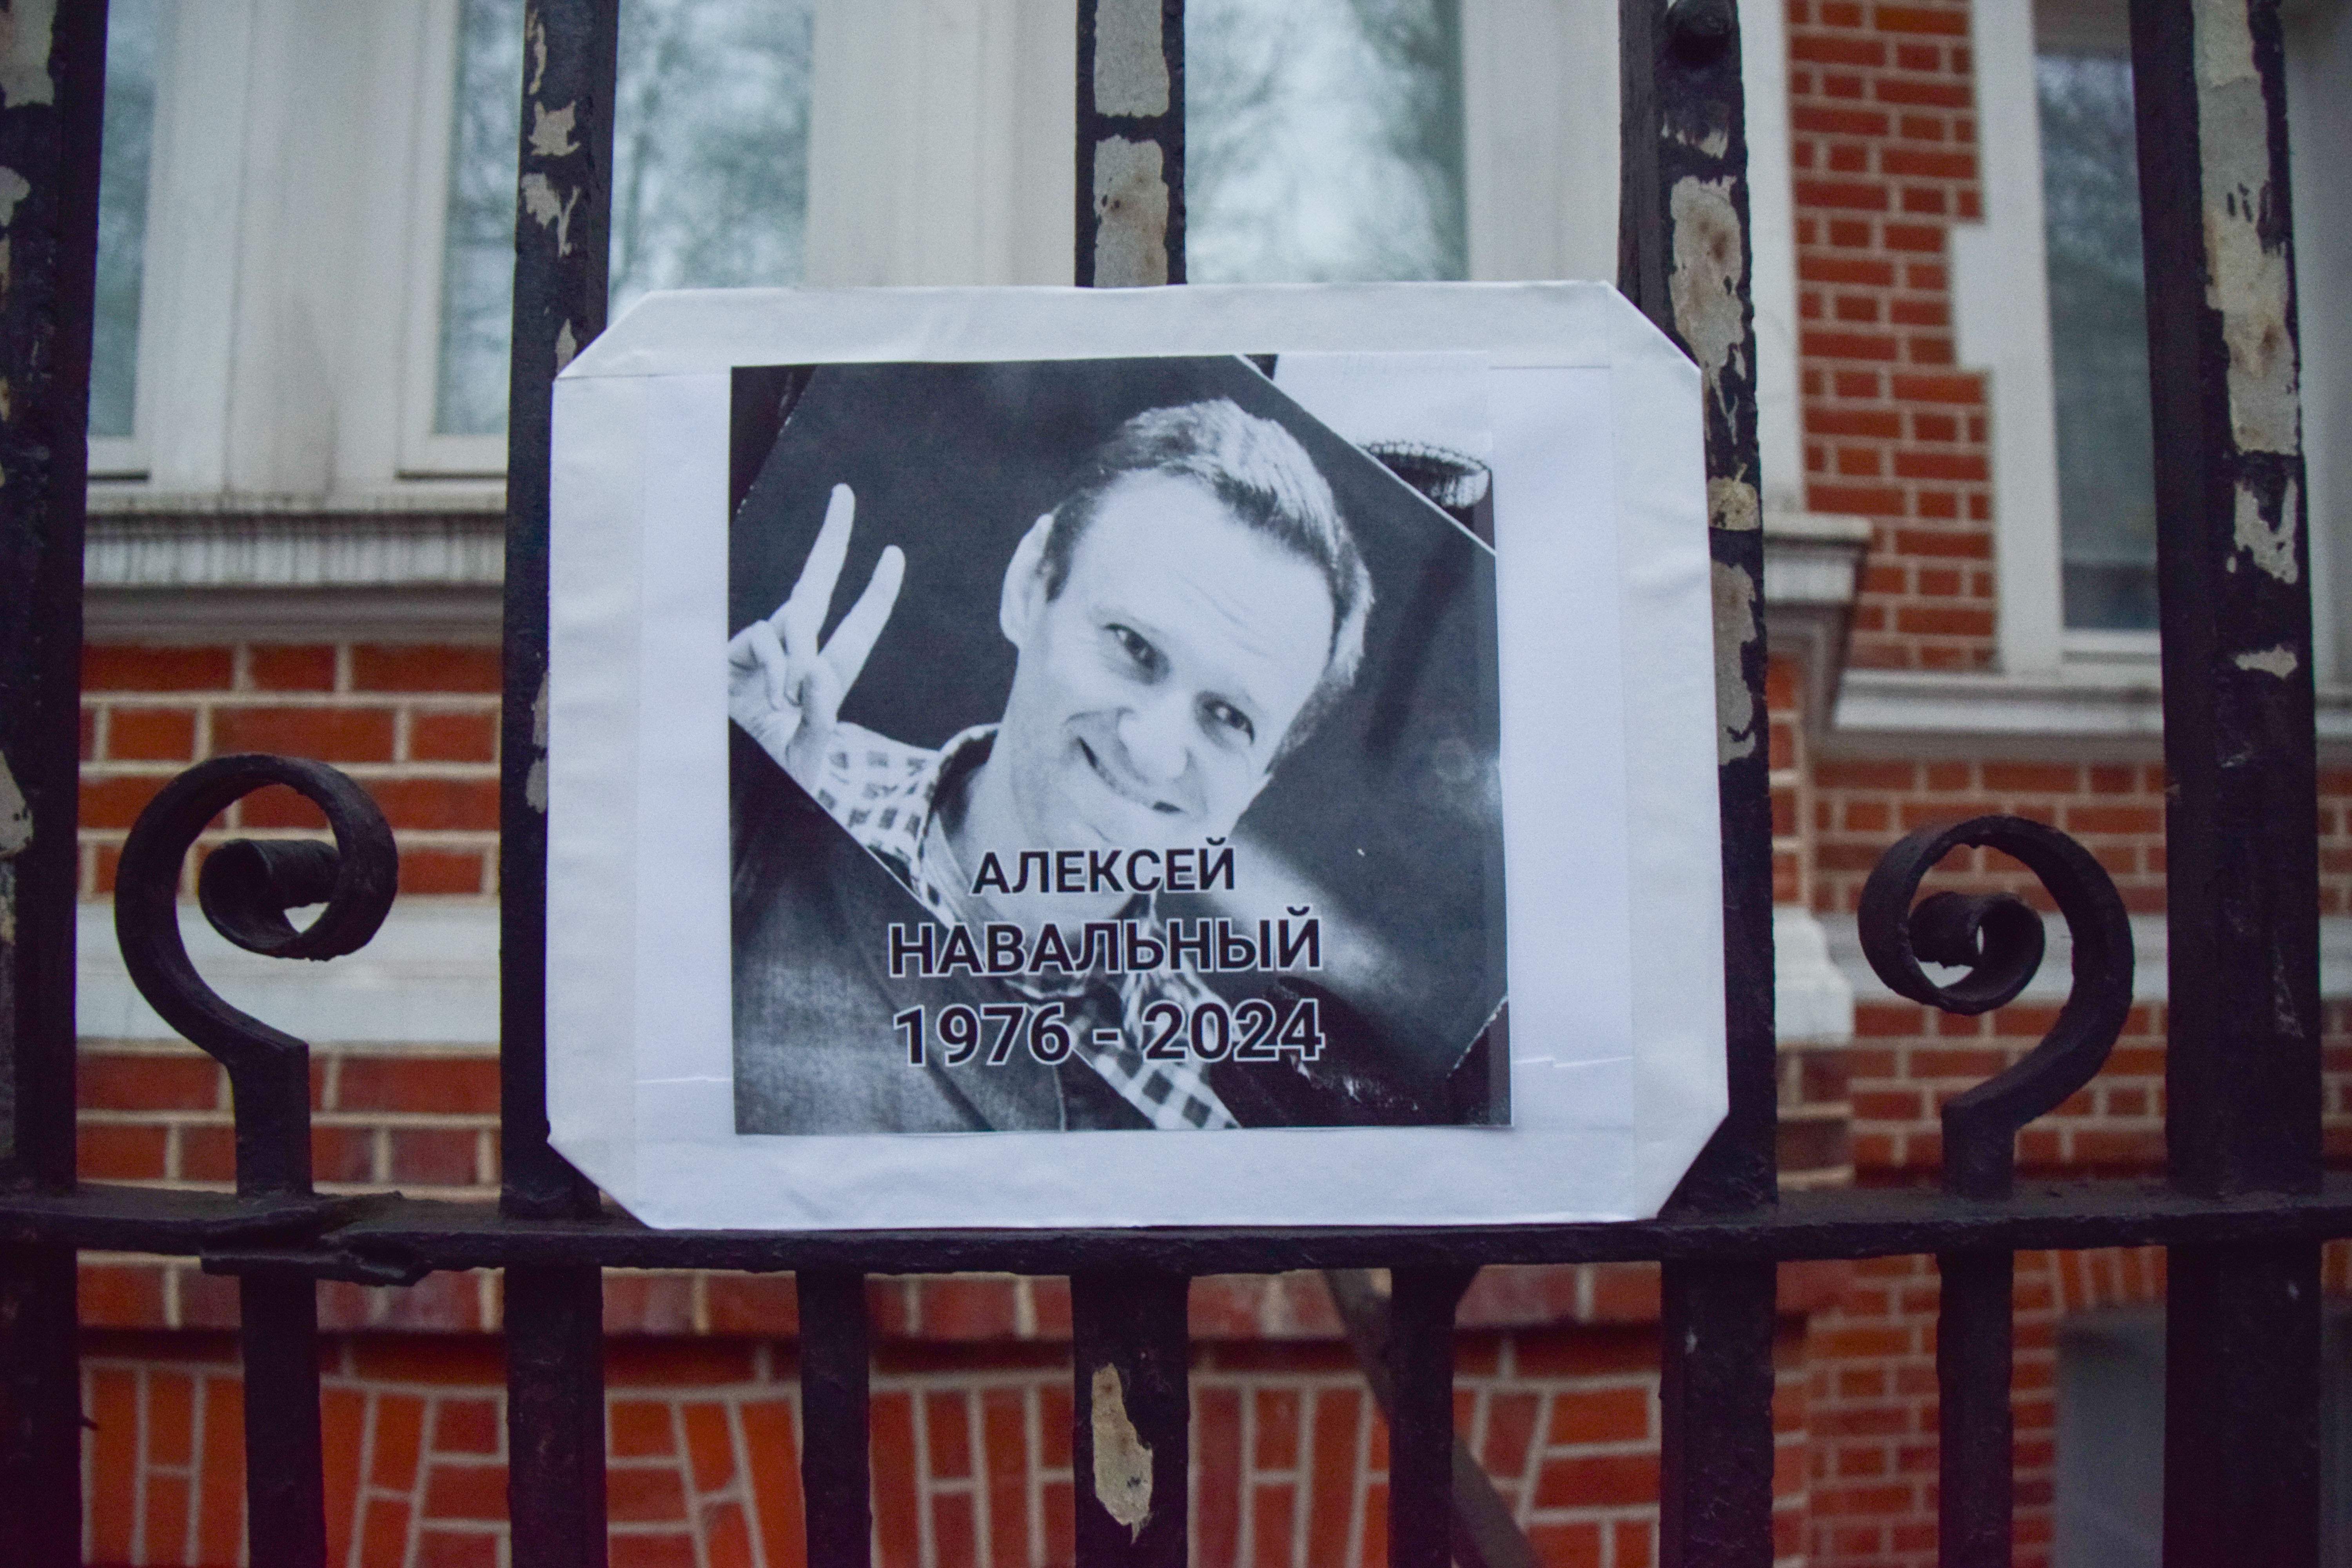 On és el cos d'Aleksei Navalni?